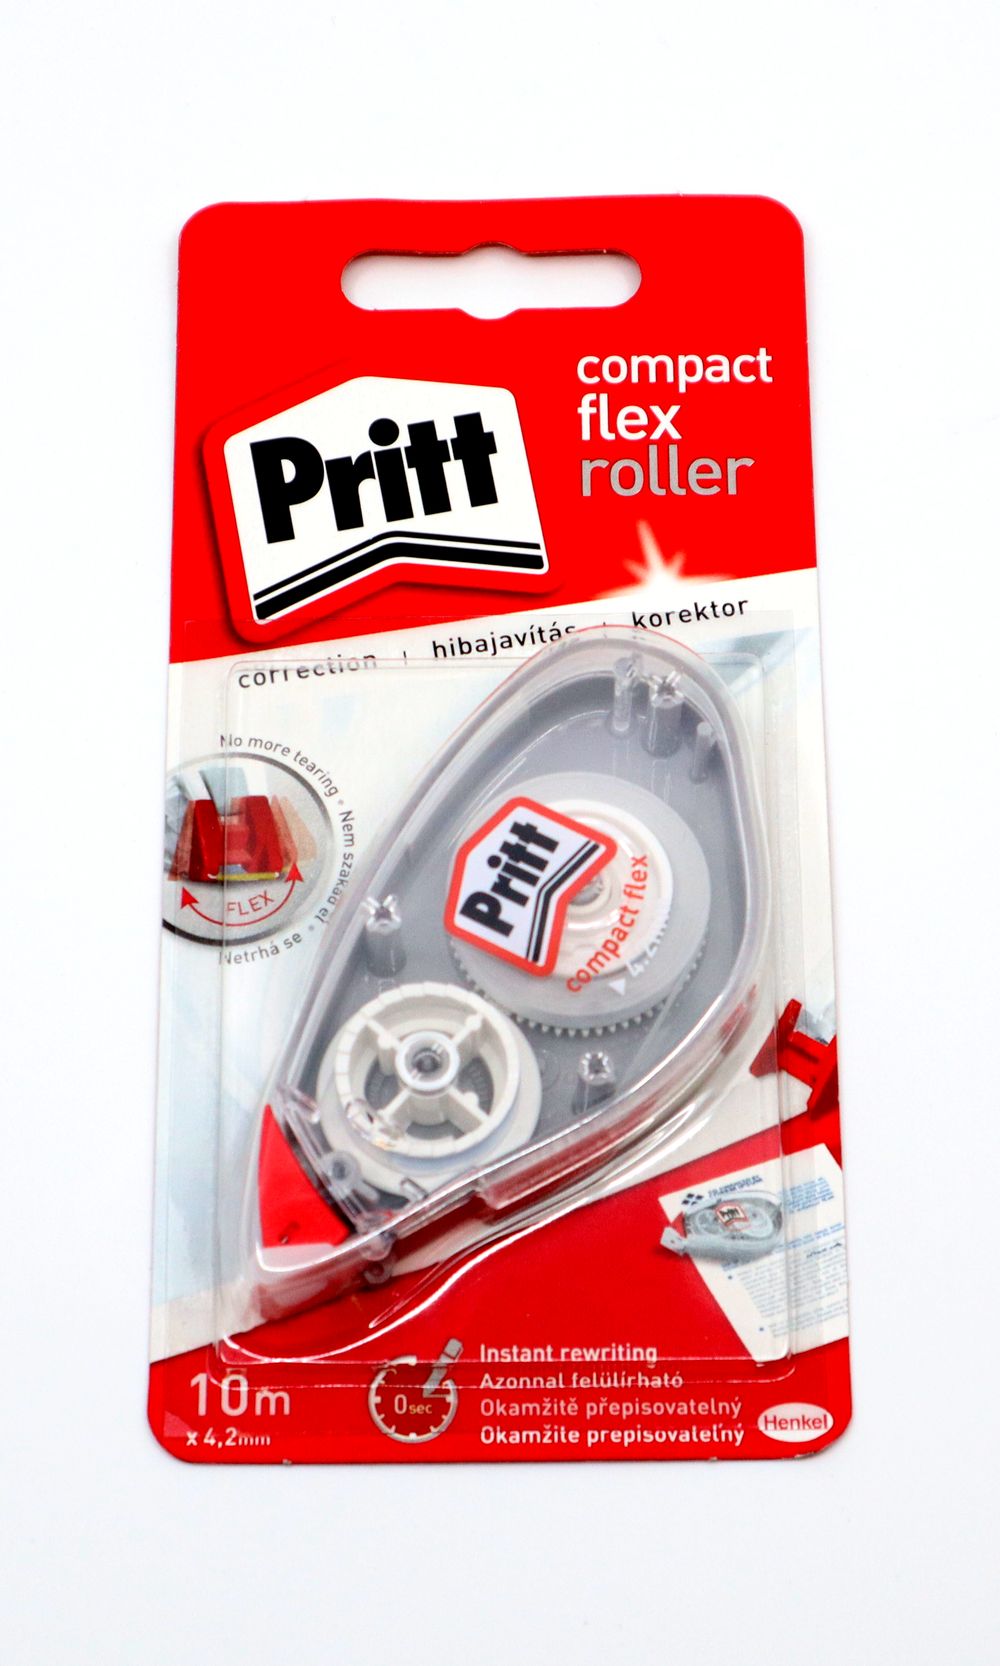 10m x 4,2 mm korekčný roller Pritt Compact Roller   